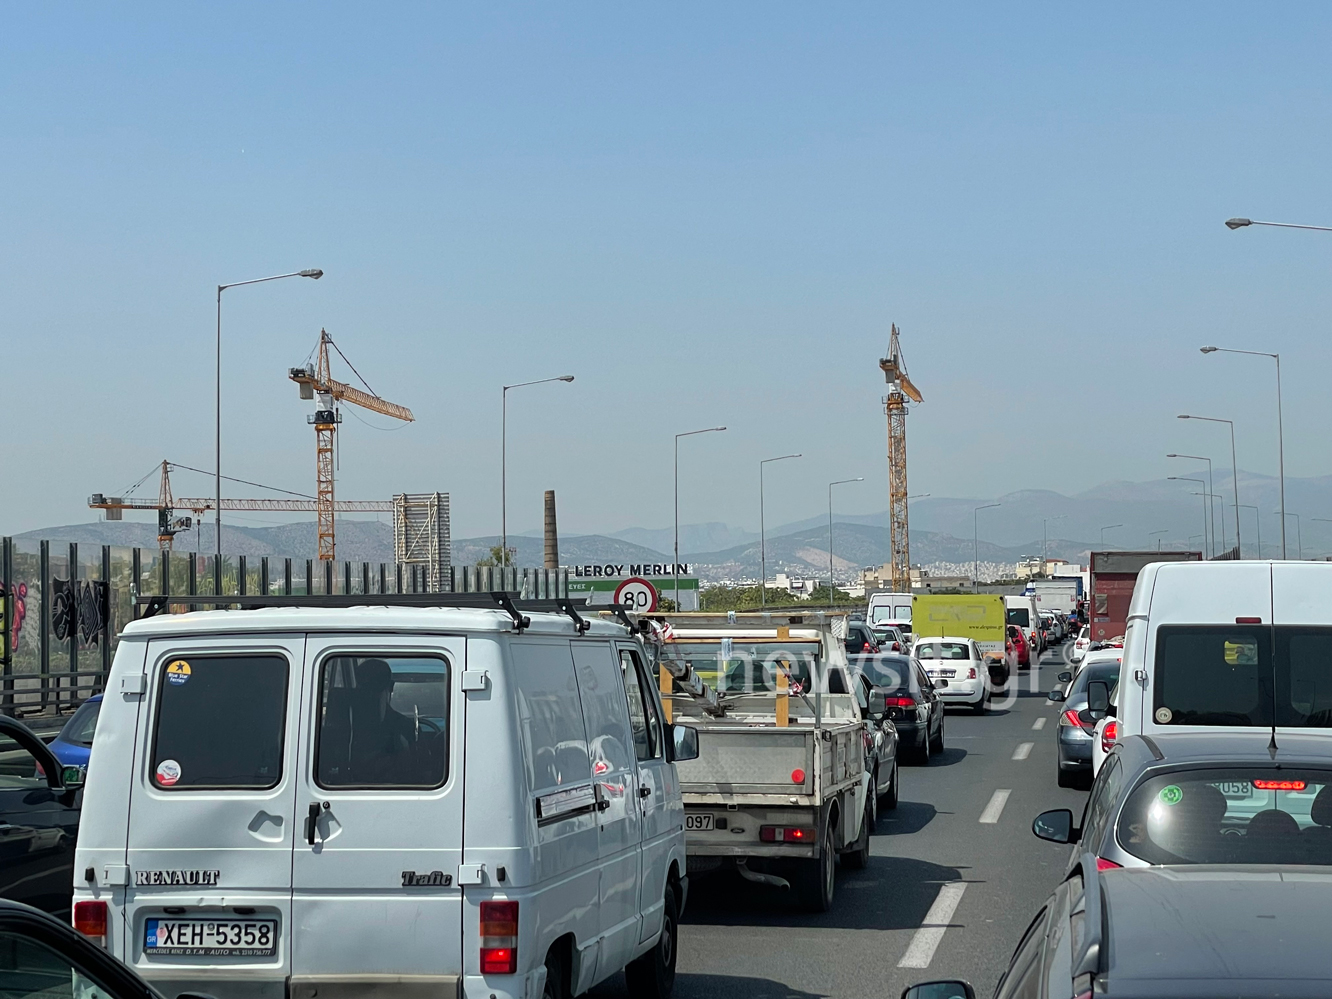 Κηφισσός: Σοβαρό τροχαίο στο ρεύμα προς Πειραιά – Οι πρώτες εικόνες μετά τη σύγκρουση αυτοκινήτου με μηχανή